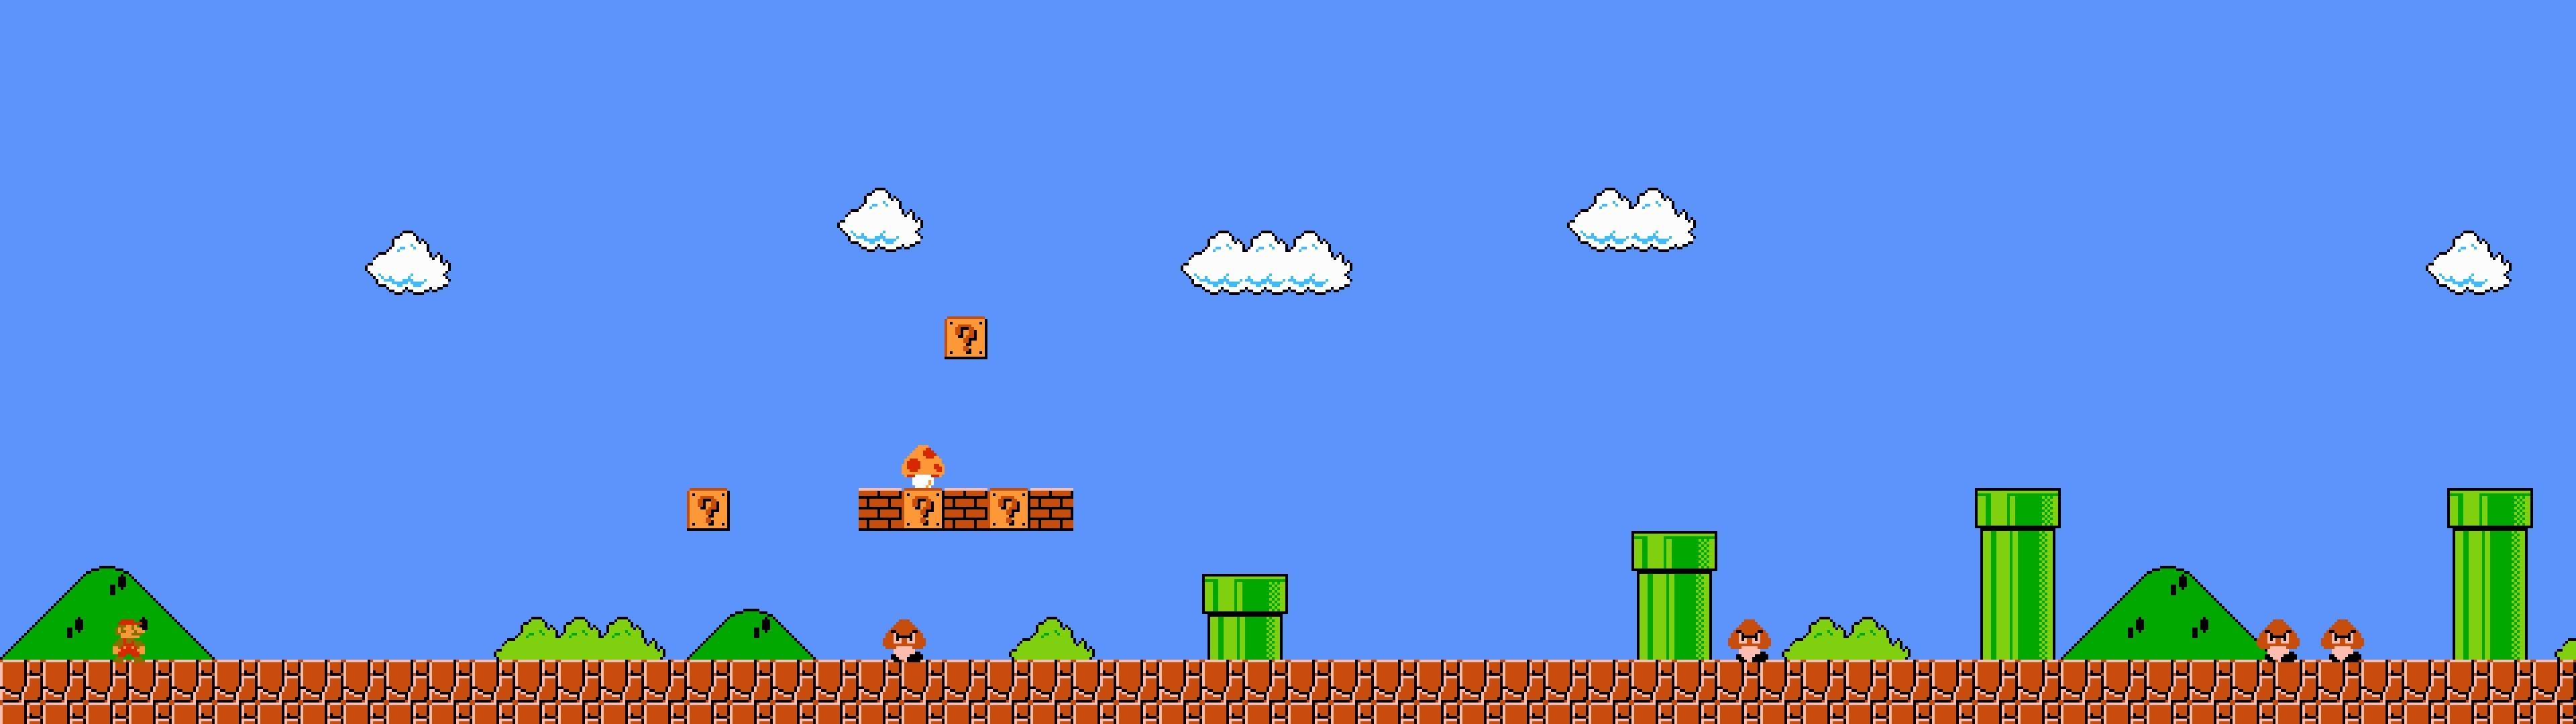 Mario In Portal Dual Screen Picture